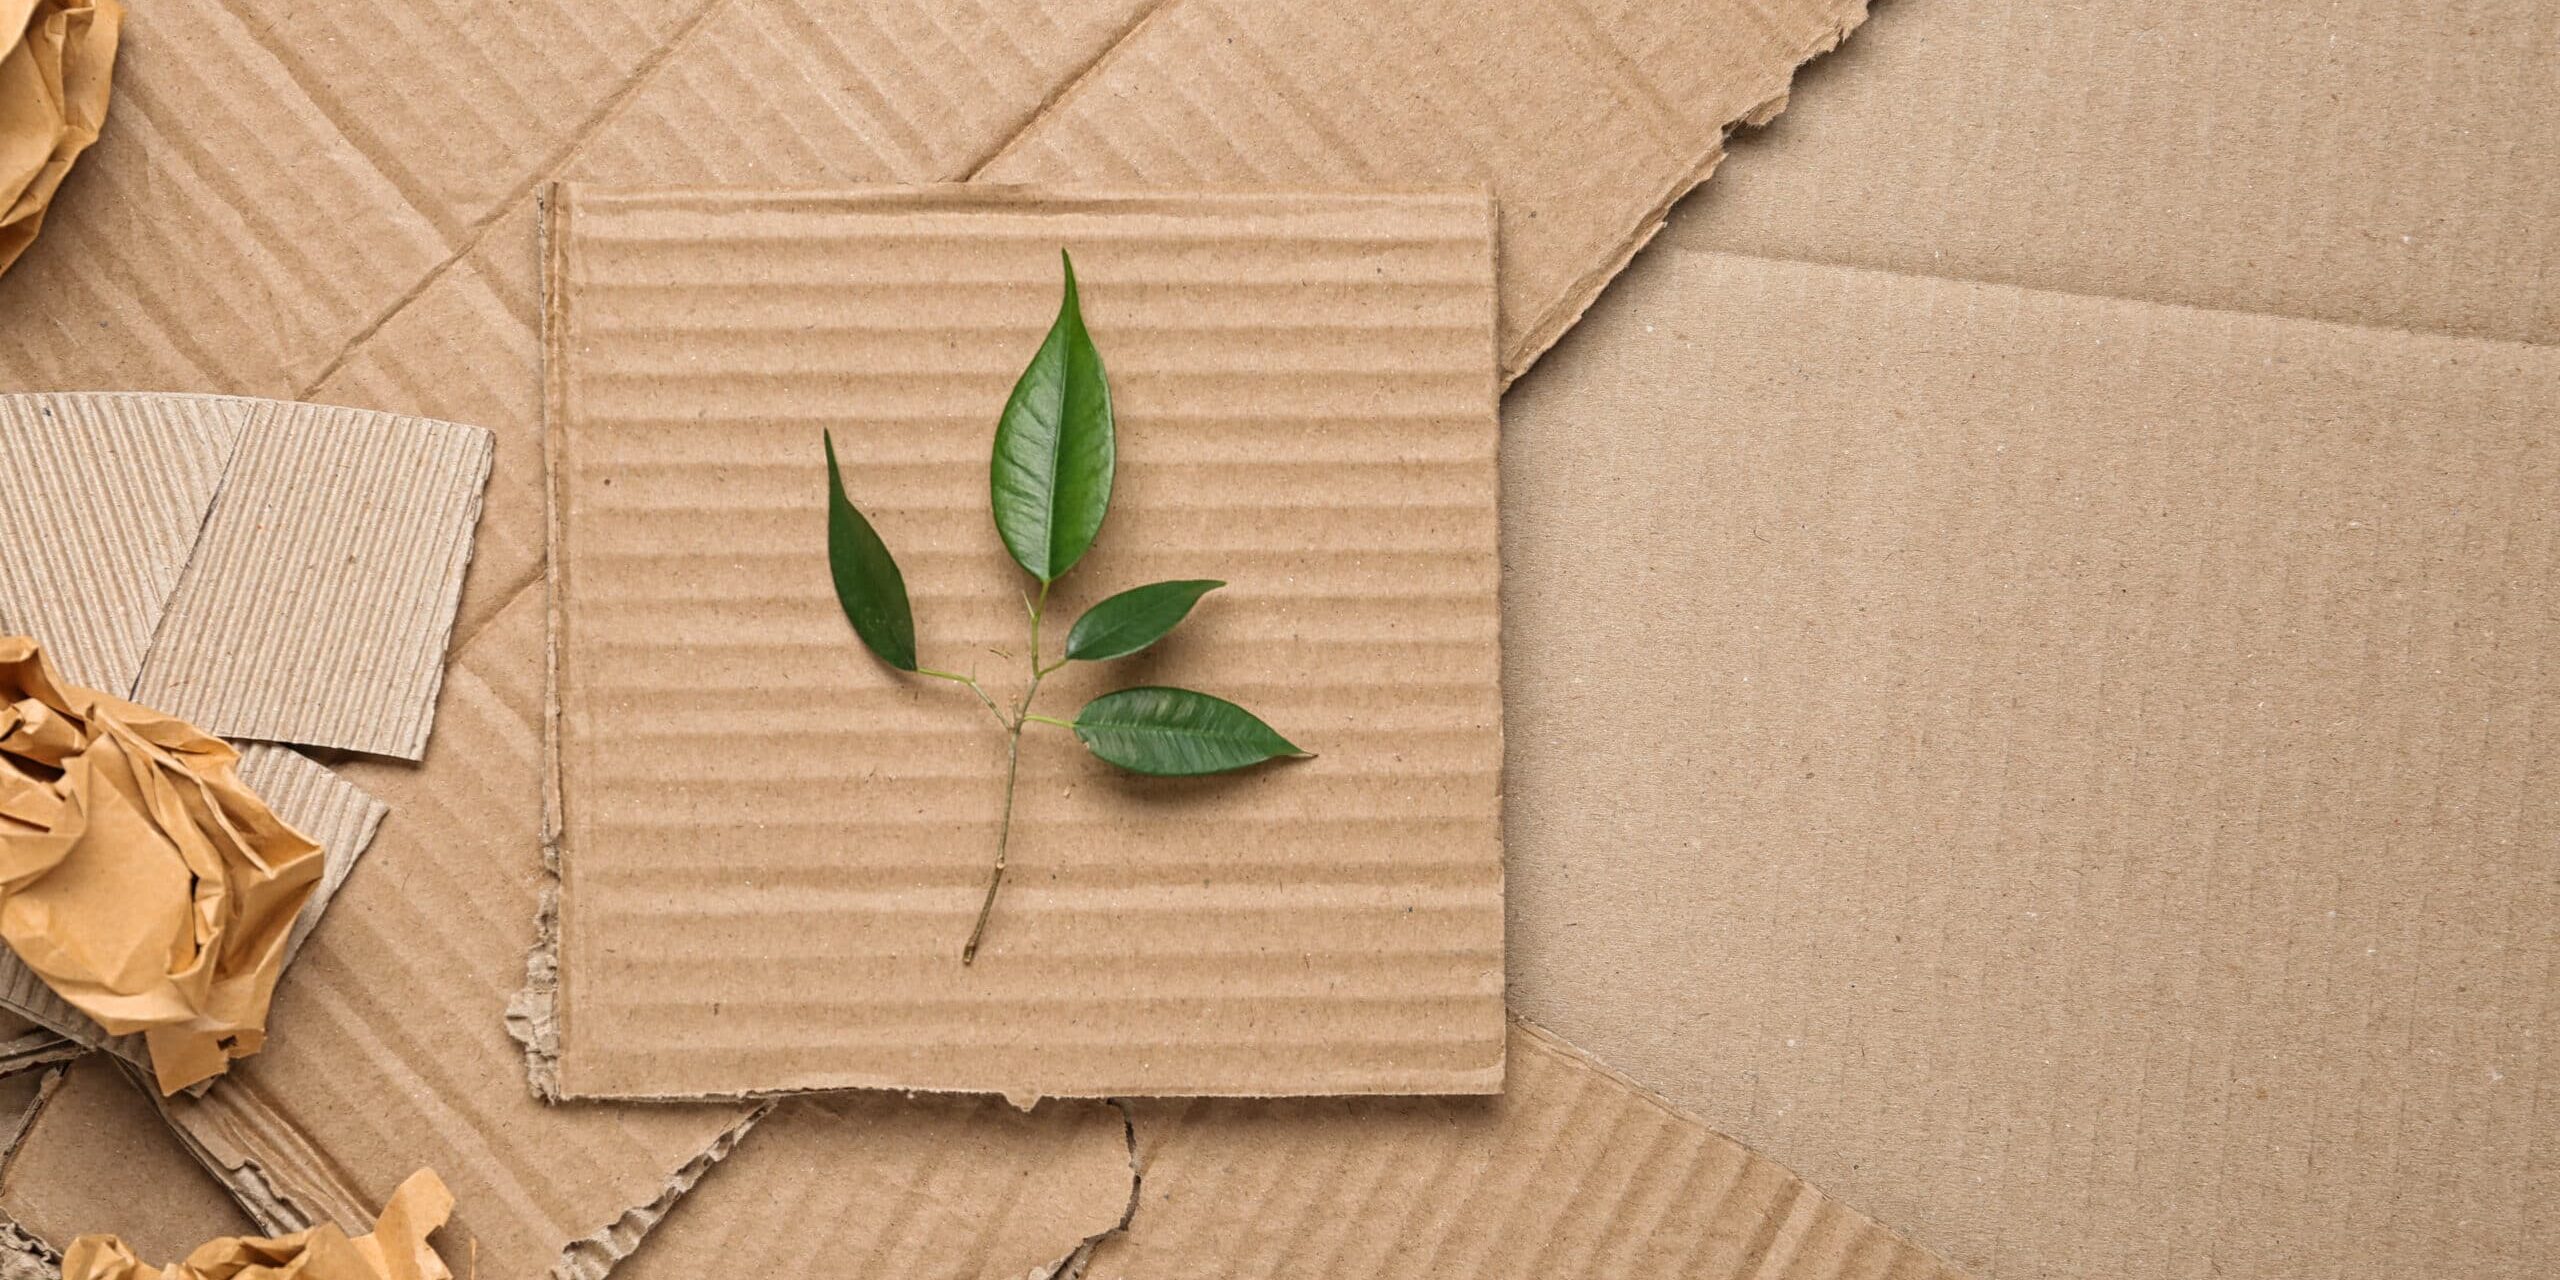 Embalaje sostenible: una necesidad urgente